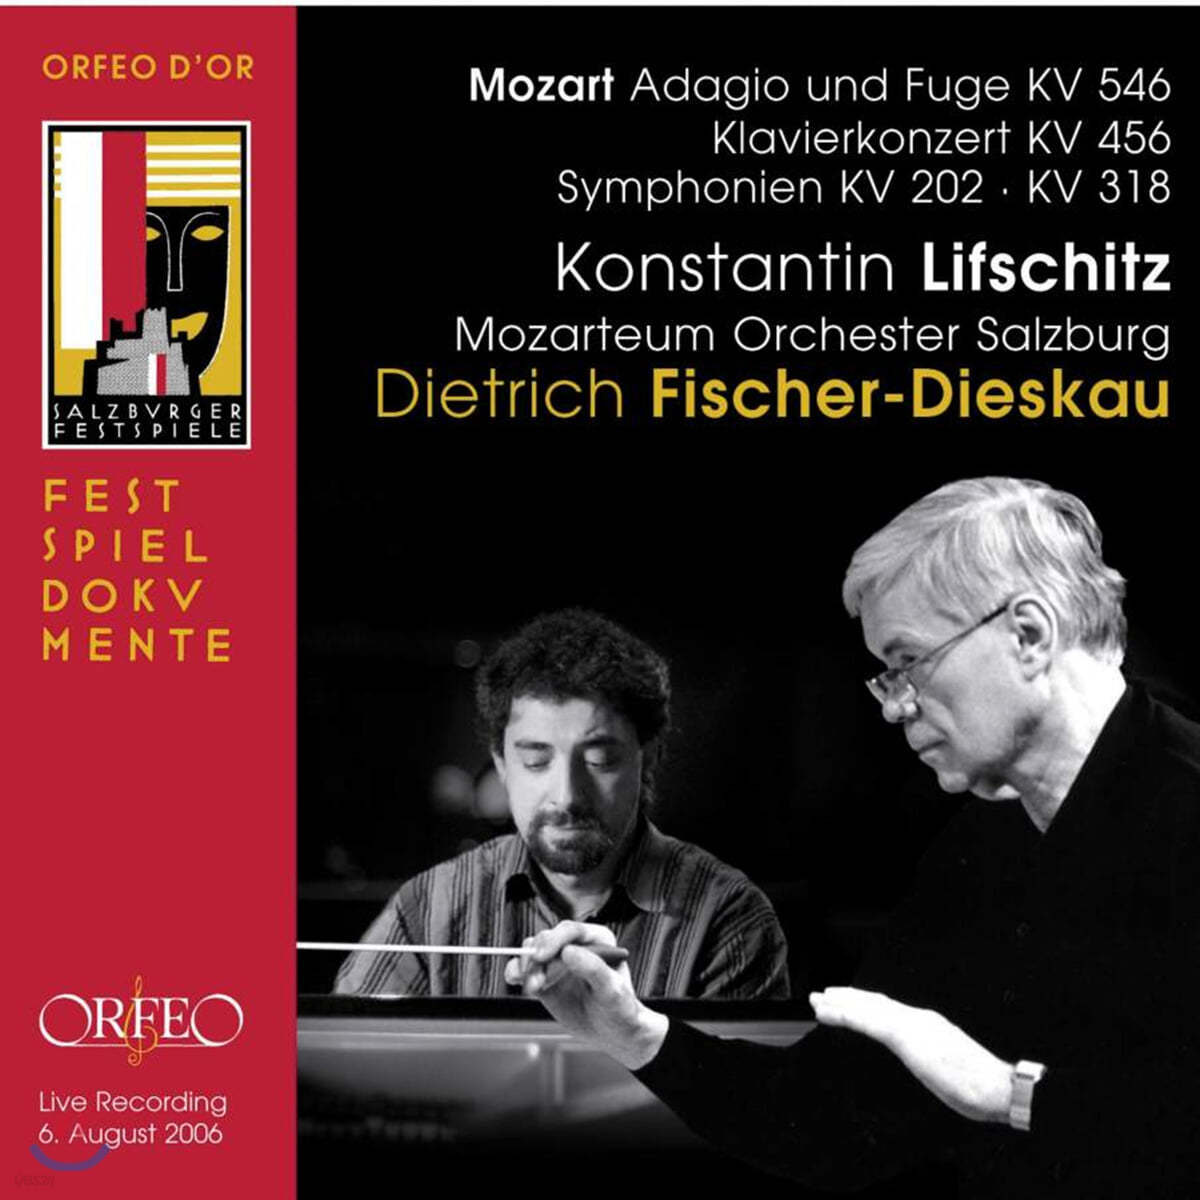 Dietrich Fischer-Dieskau / Konstantin Lifschitz 모차르트: 교향곡 30번 32번, 피아노 협주곡 18번